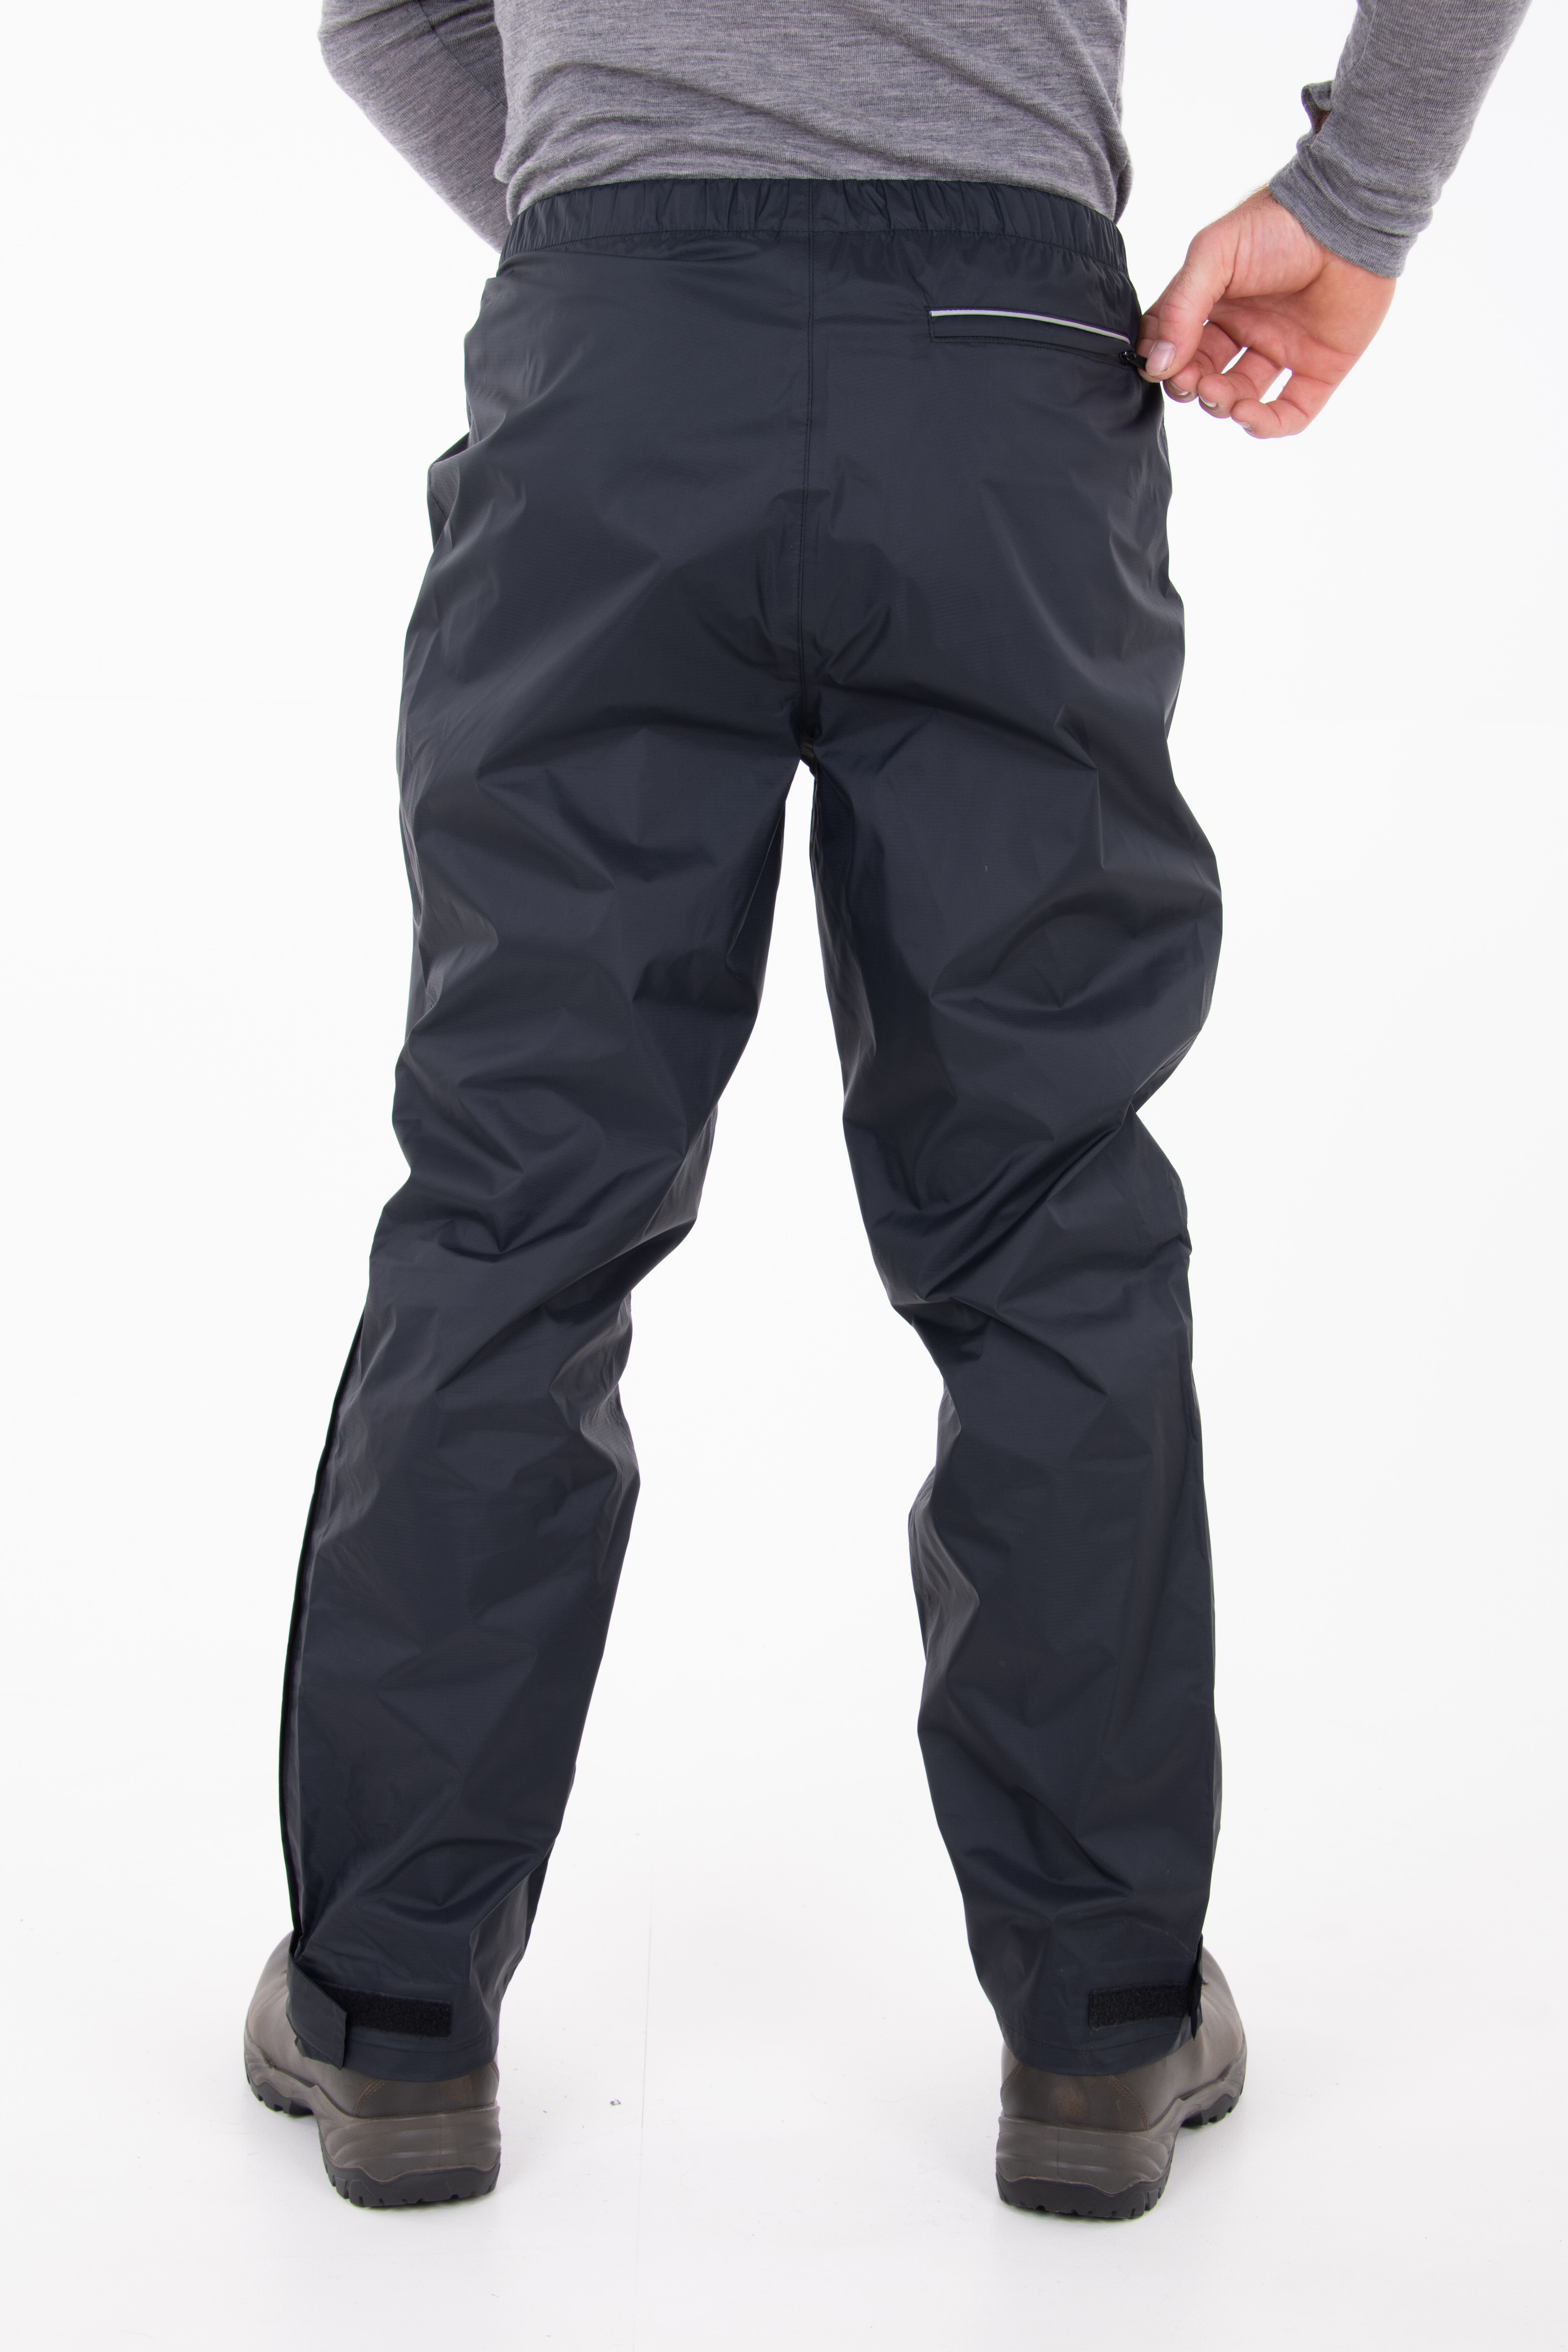 adidas Climastorm Essentials Packable Rain Pants  Golf Warehouse NZ